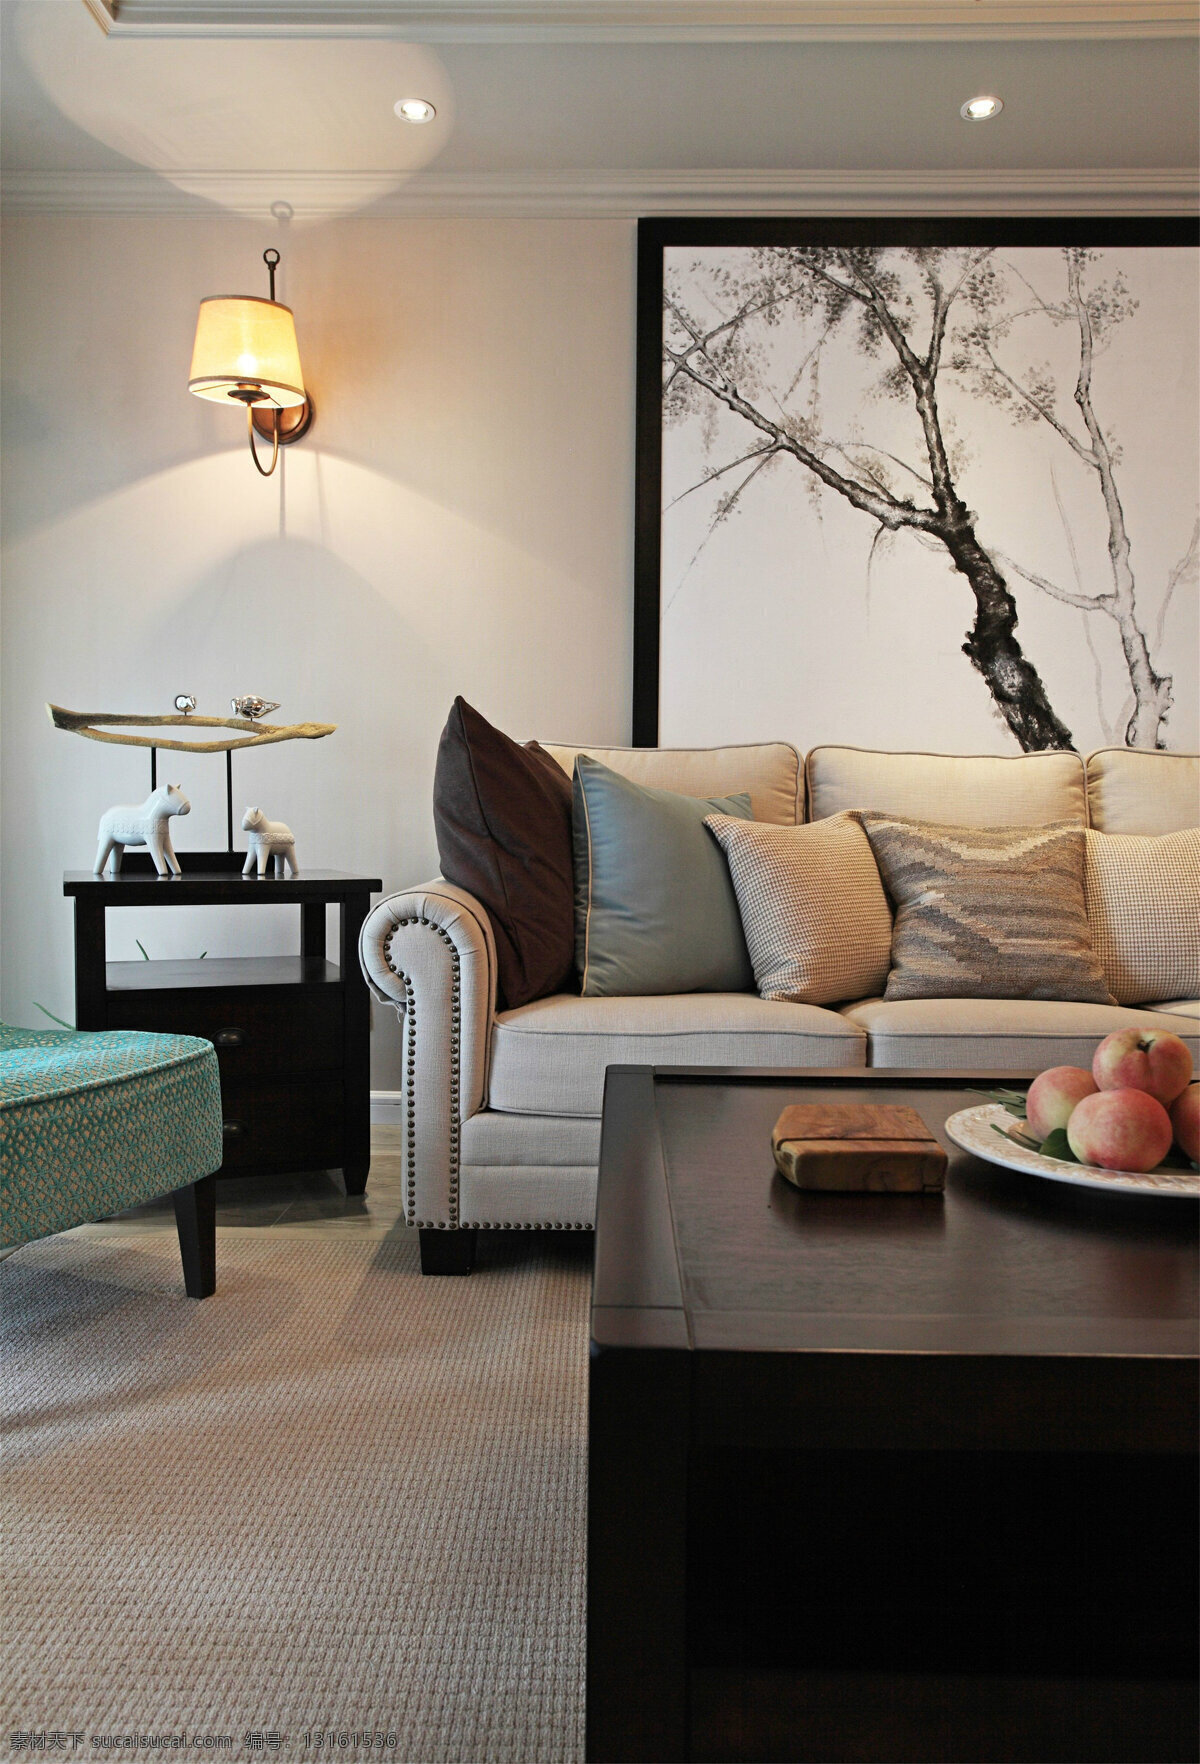 现代 简约 客厅 装修 效果图 创意 环境设计 家居 生活 家具 时尚 室内 室内设计 家居生活 沙发 壁画